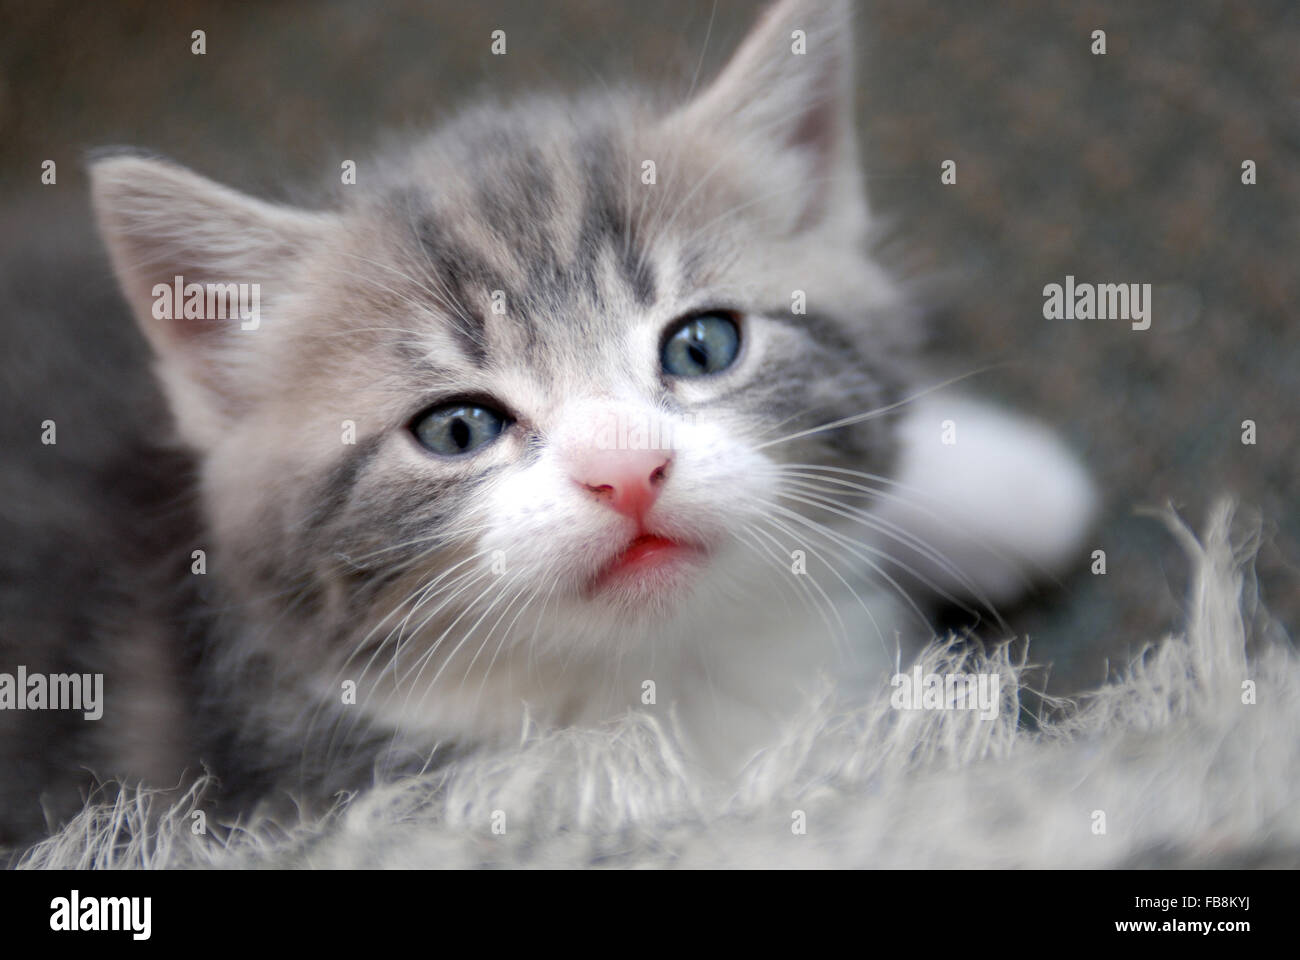 Cute grey kitten Stock Photo